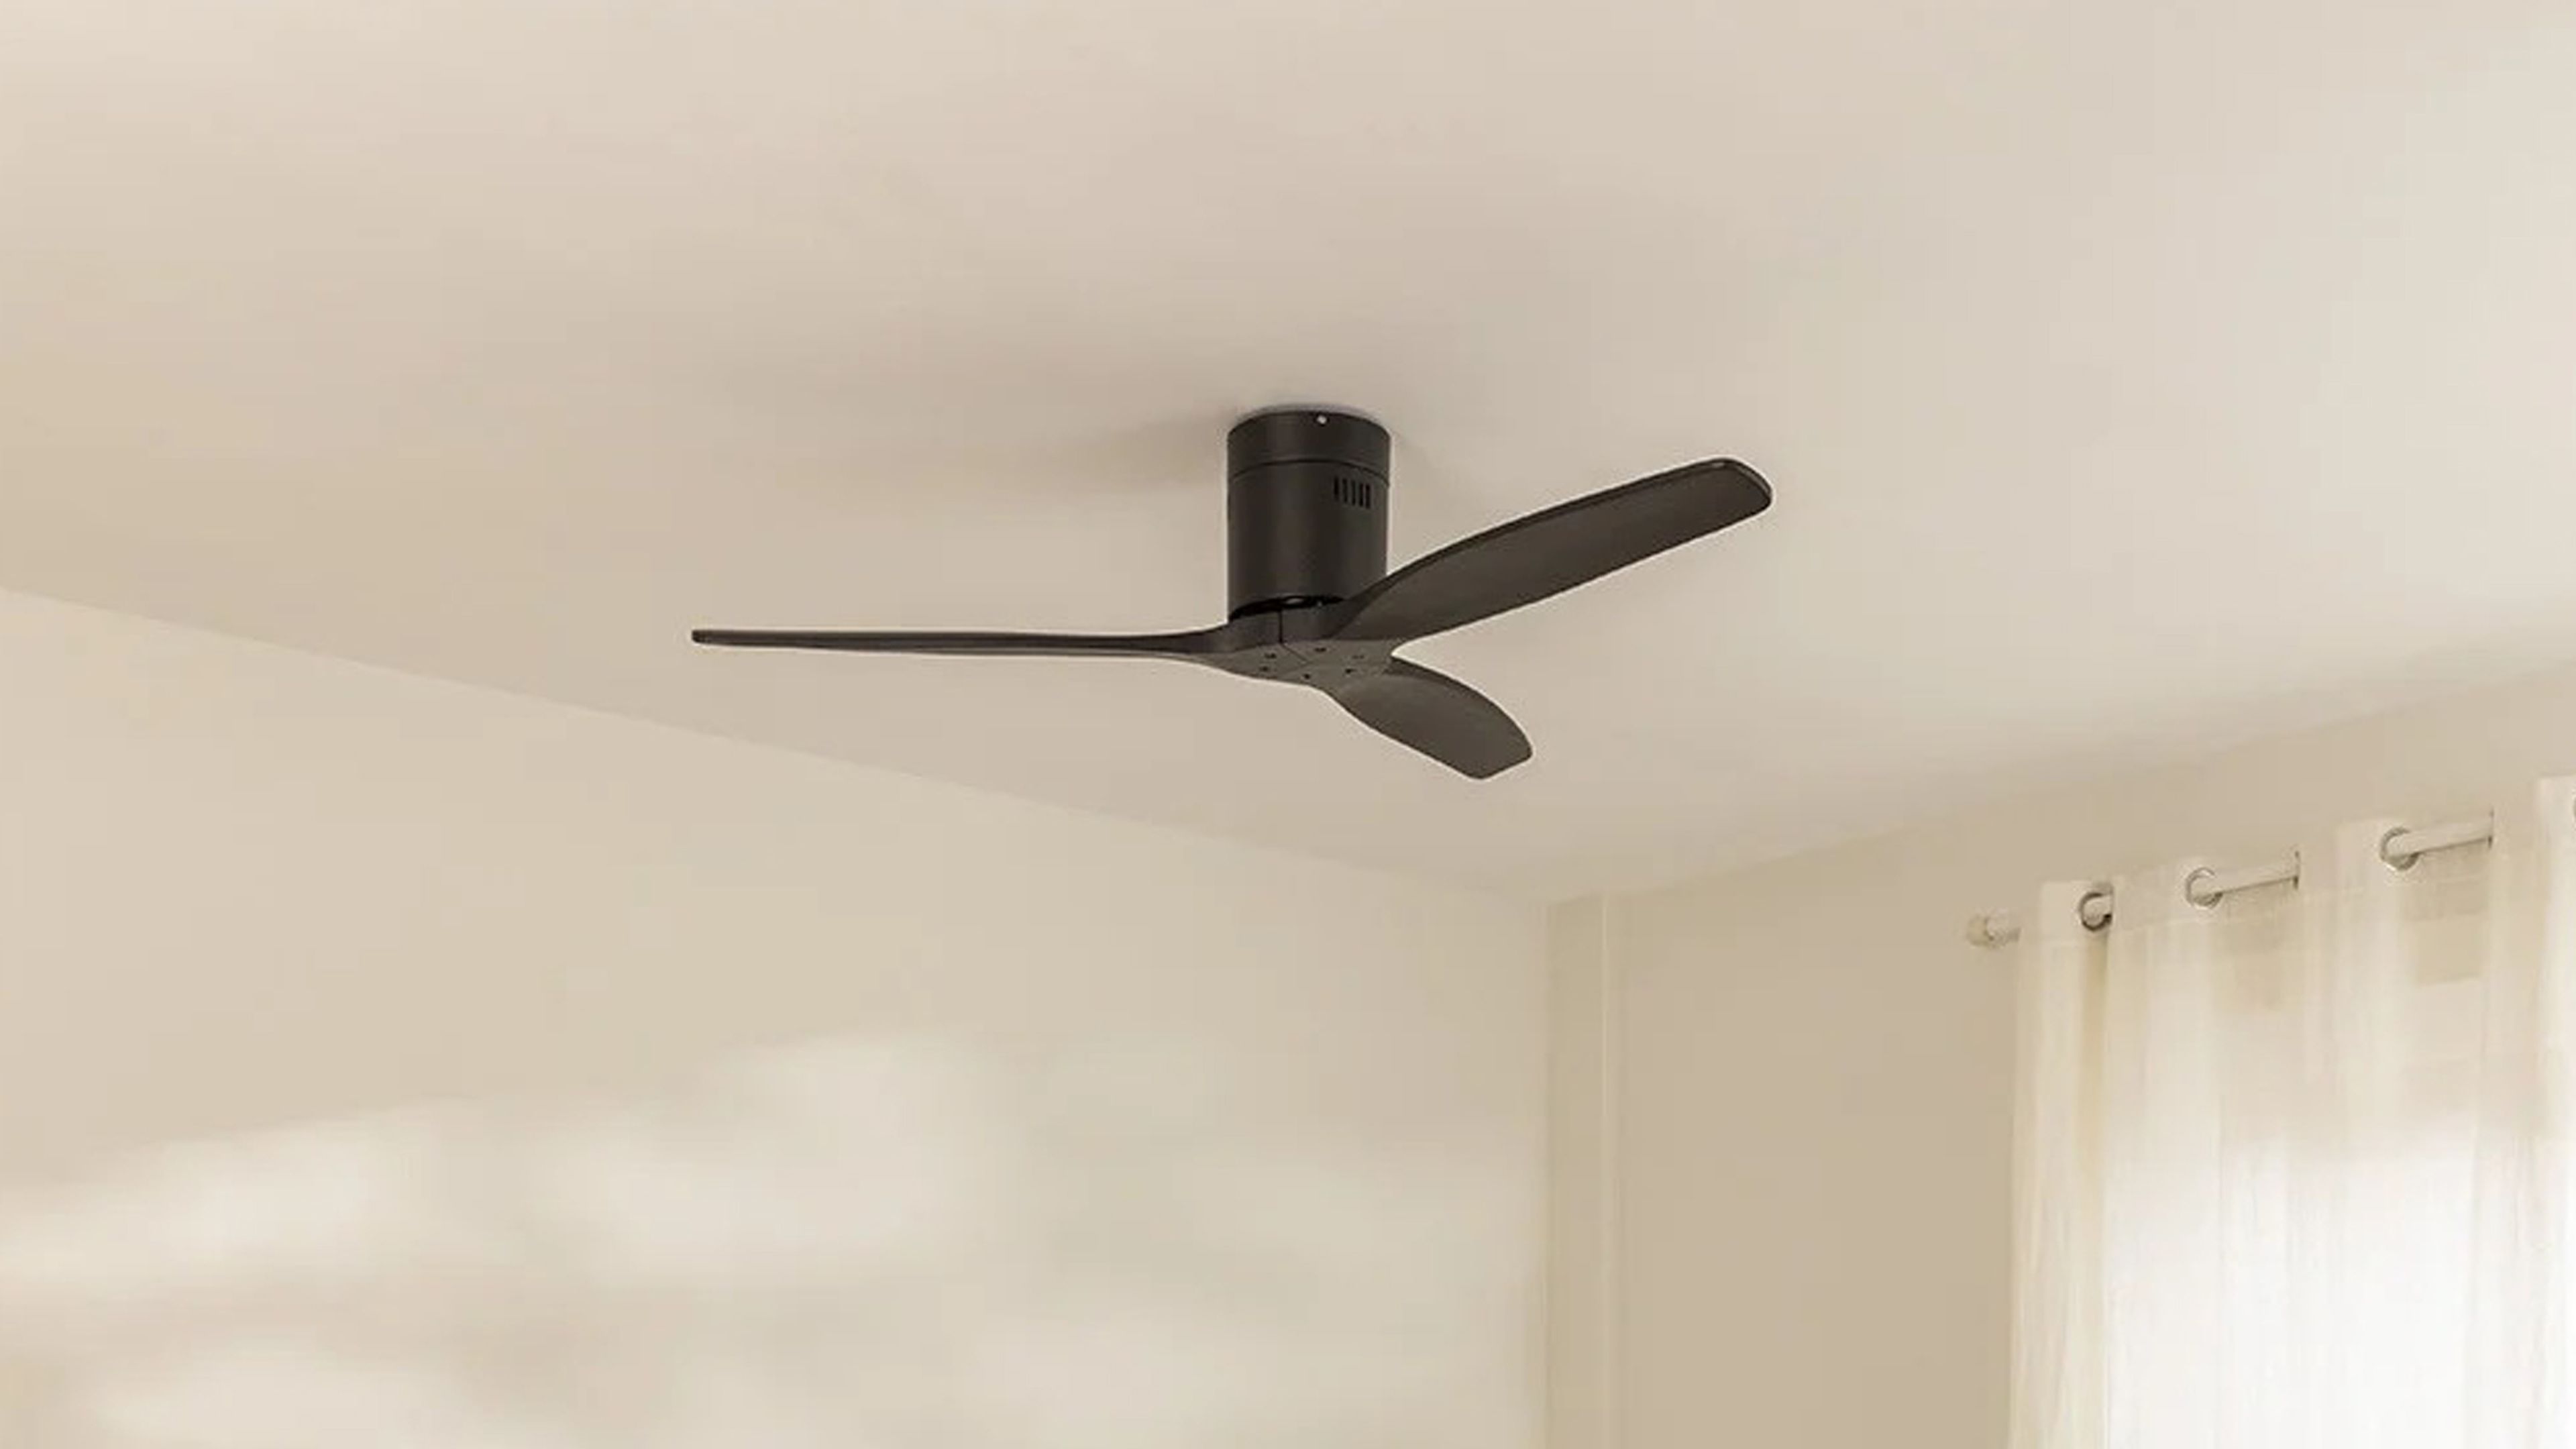 El ventilador de techo con WiFi que mejores valoraciones tiene en